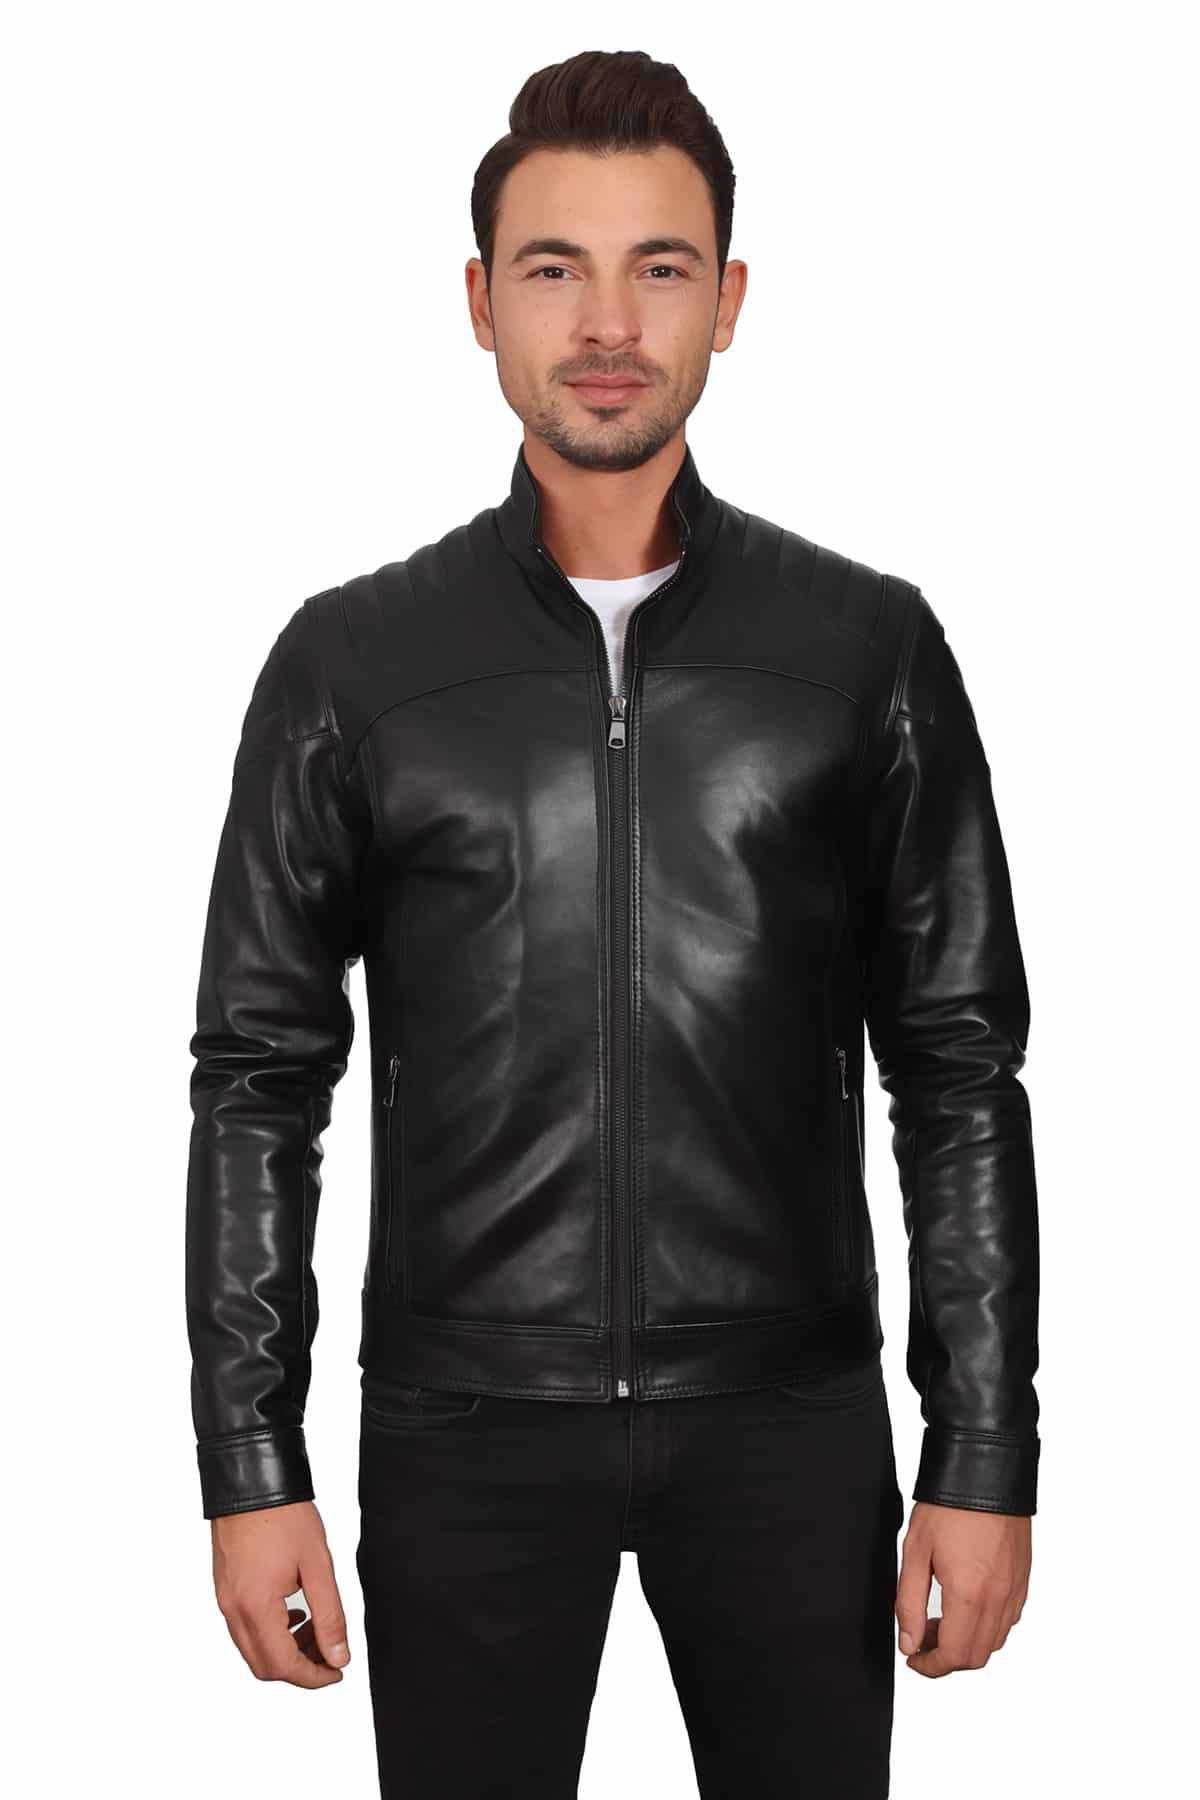 Men's 100 % Real Black Leather Biker Style Jacket